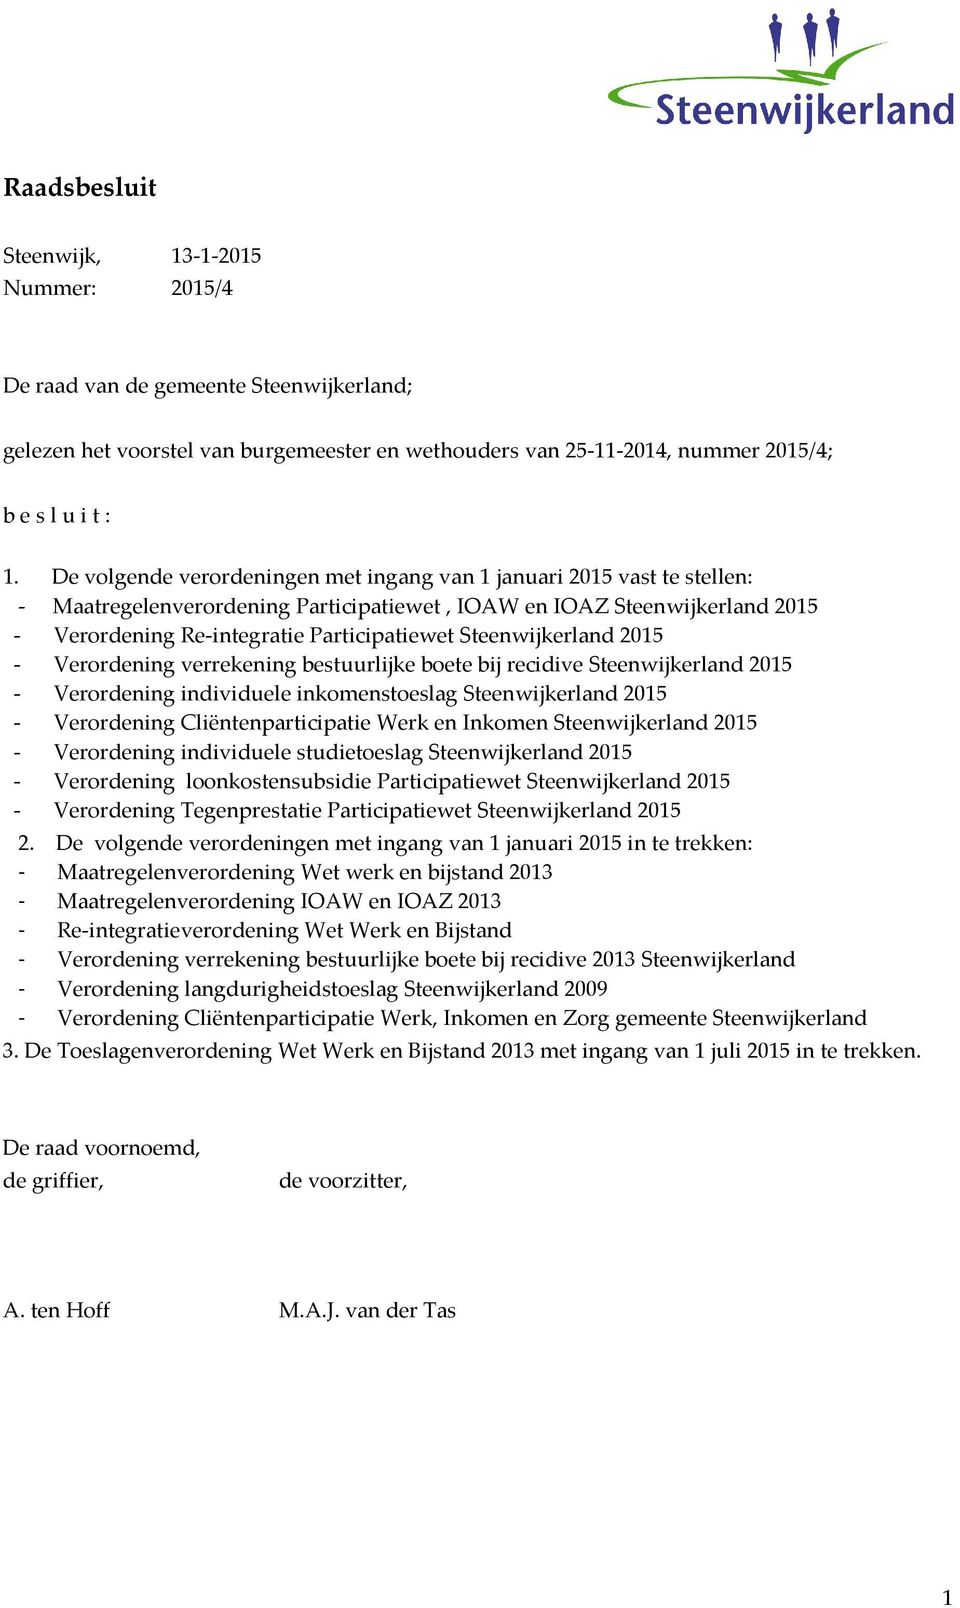 Steenwijkerland 2015 - Verordening verrekening bestuurlijke boete bij recidive Steenwijkerland 2015 - Verordening individuele inkomenstoeslag Steenwijkerland 2015 - Verordening Cliëntenparticipatie